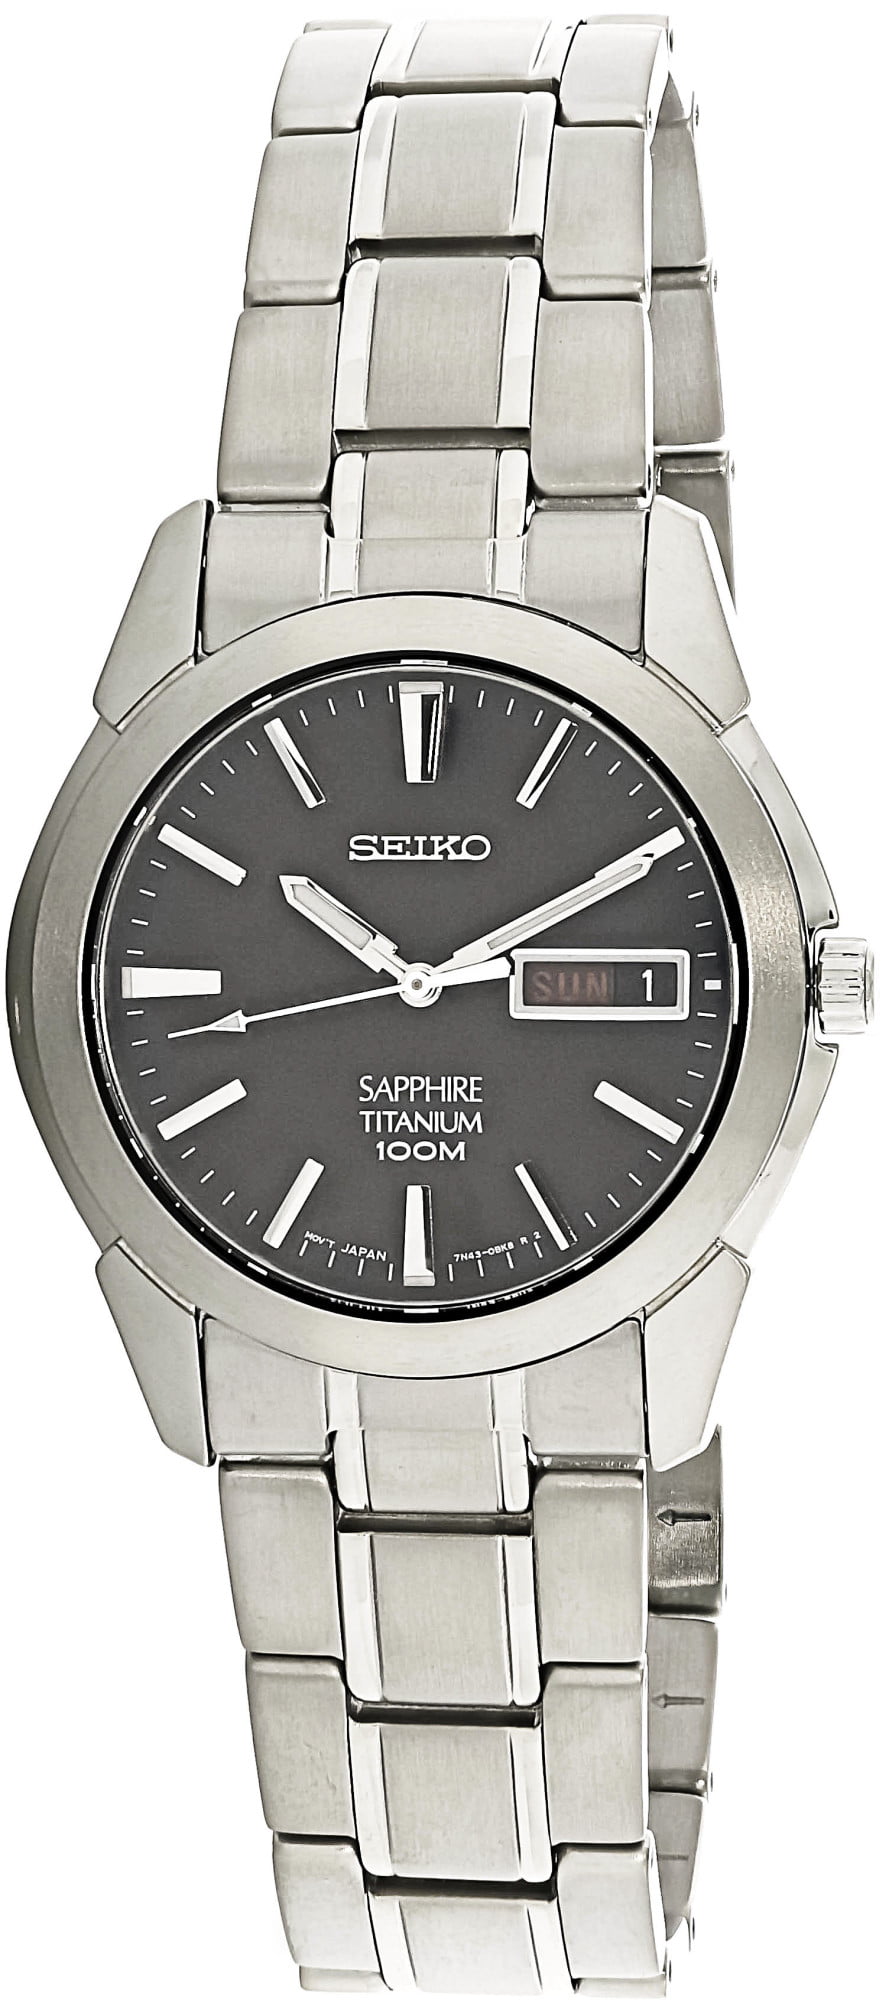 Lydig forslag Nautisk Seiko Men's Titanium SGG731 Silver Japanese Quartz Dress Watch - Walmart.com